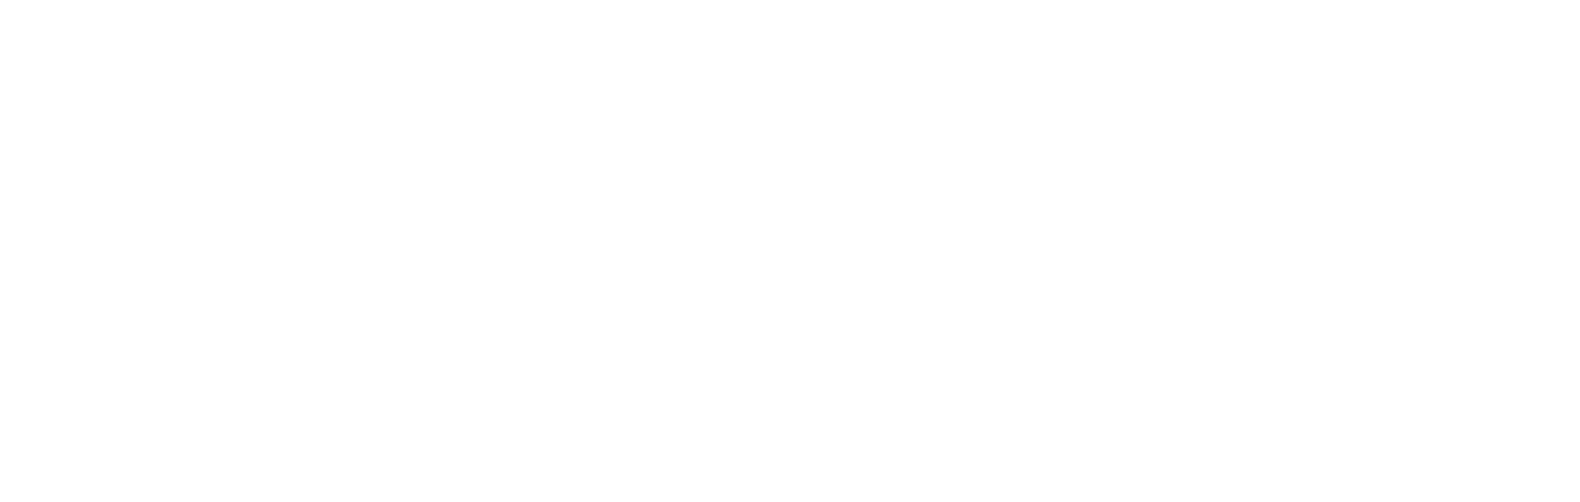 Paragon 28 logo large for dark backgrounds (transparent PNG)